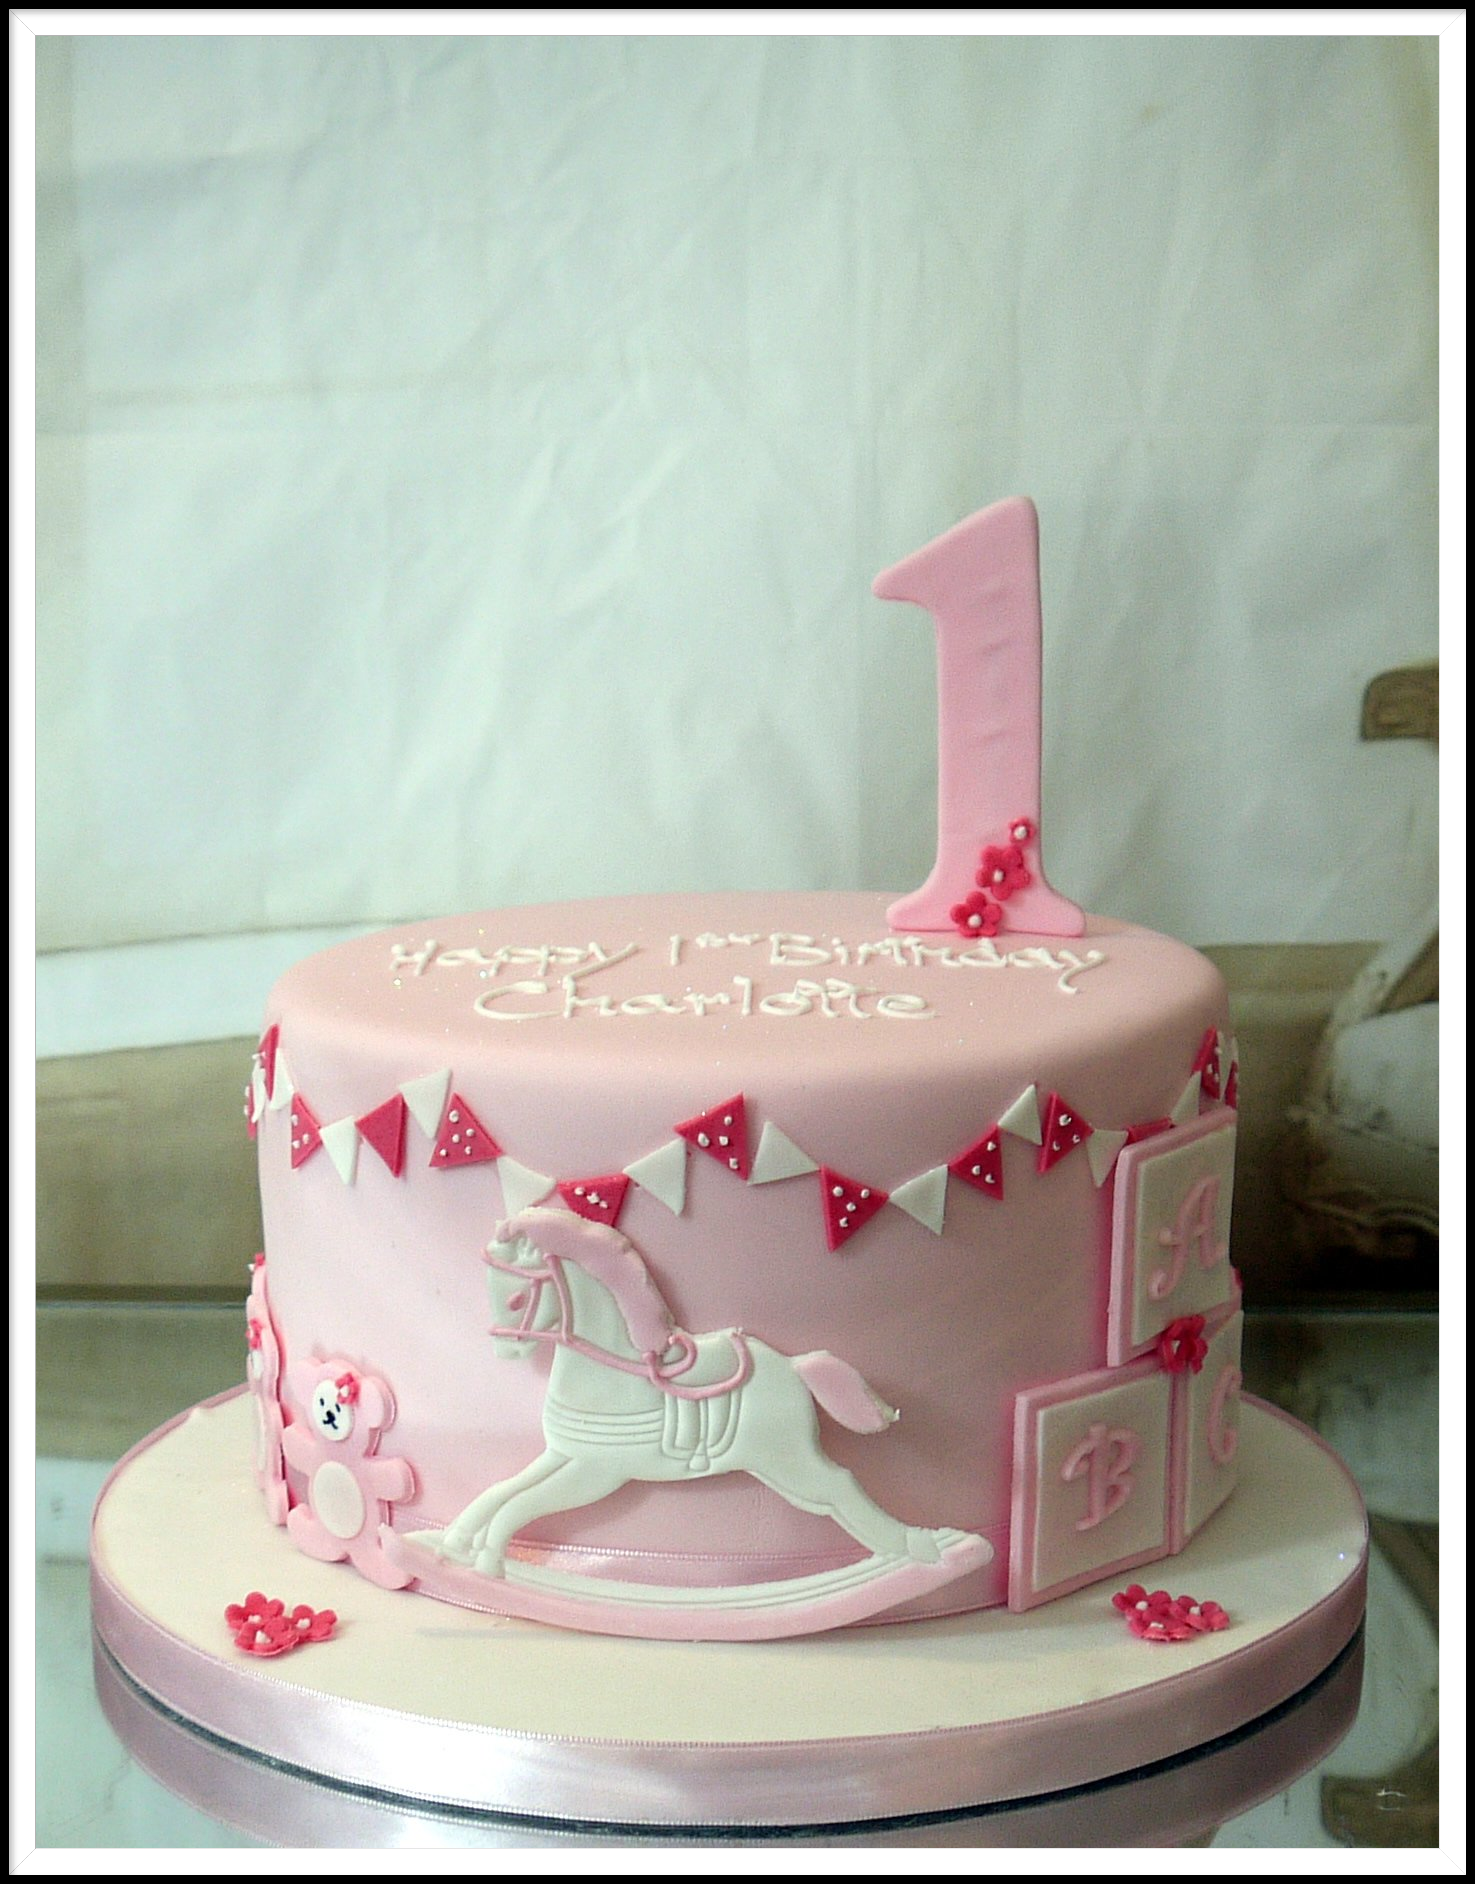 1st Birthday cake